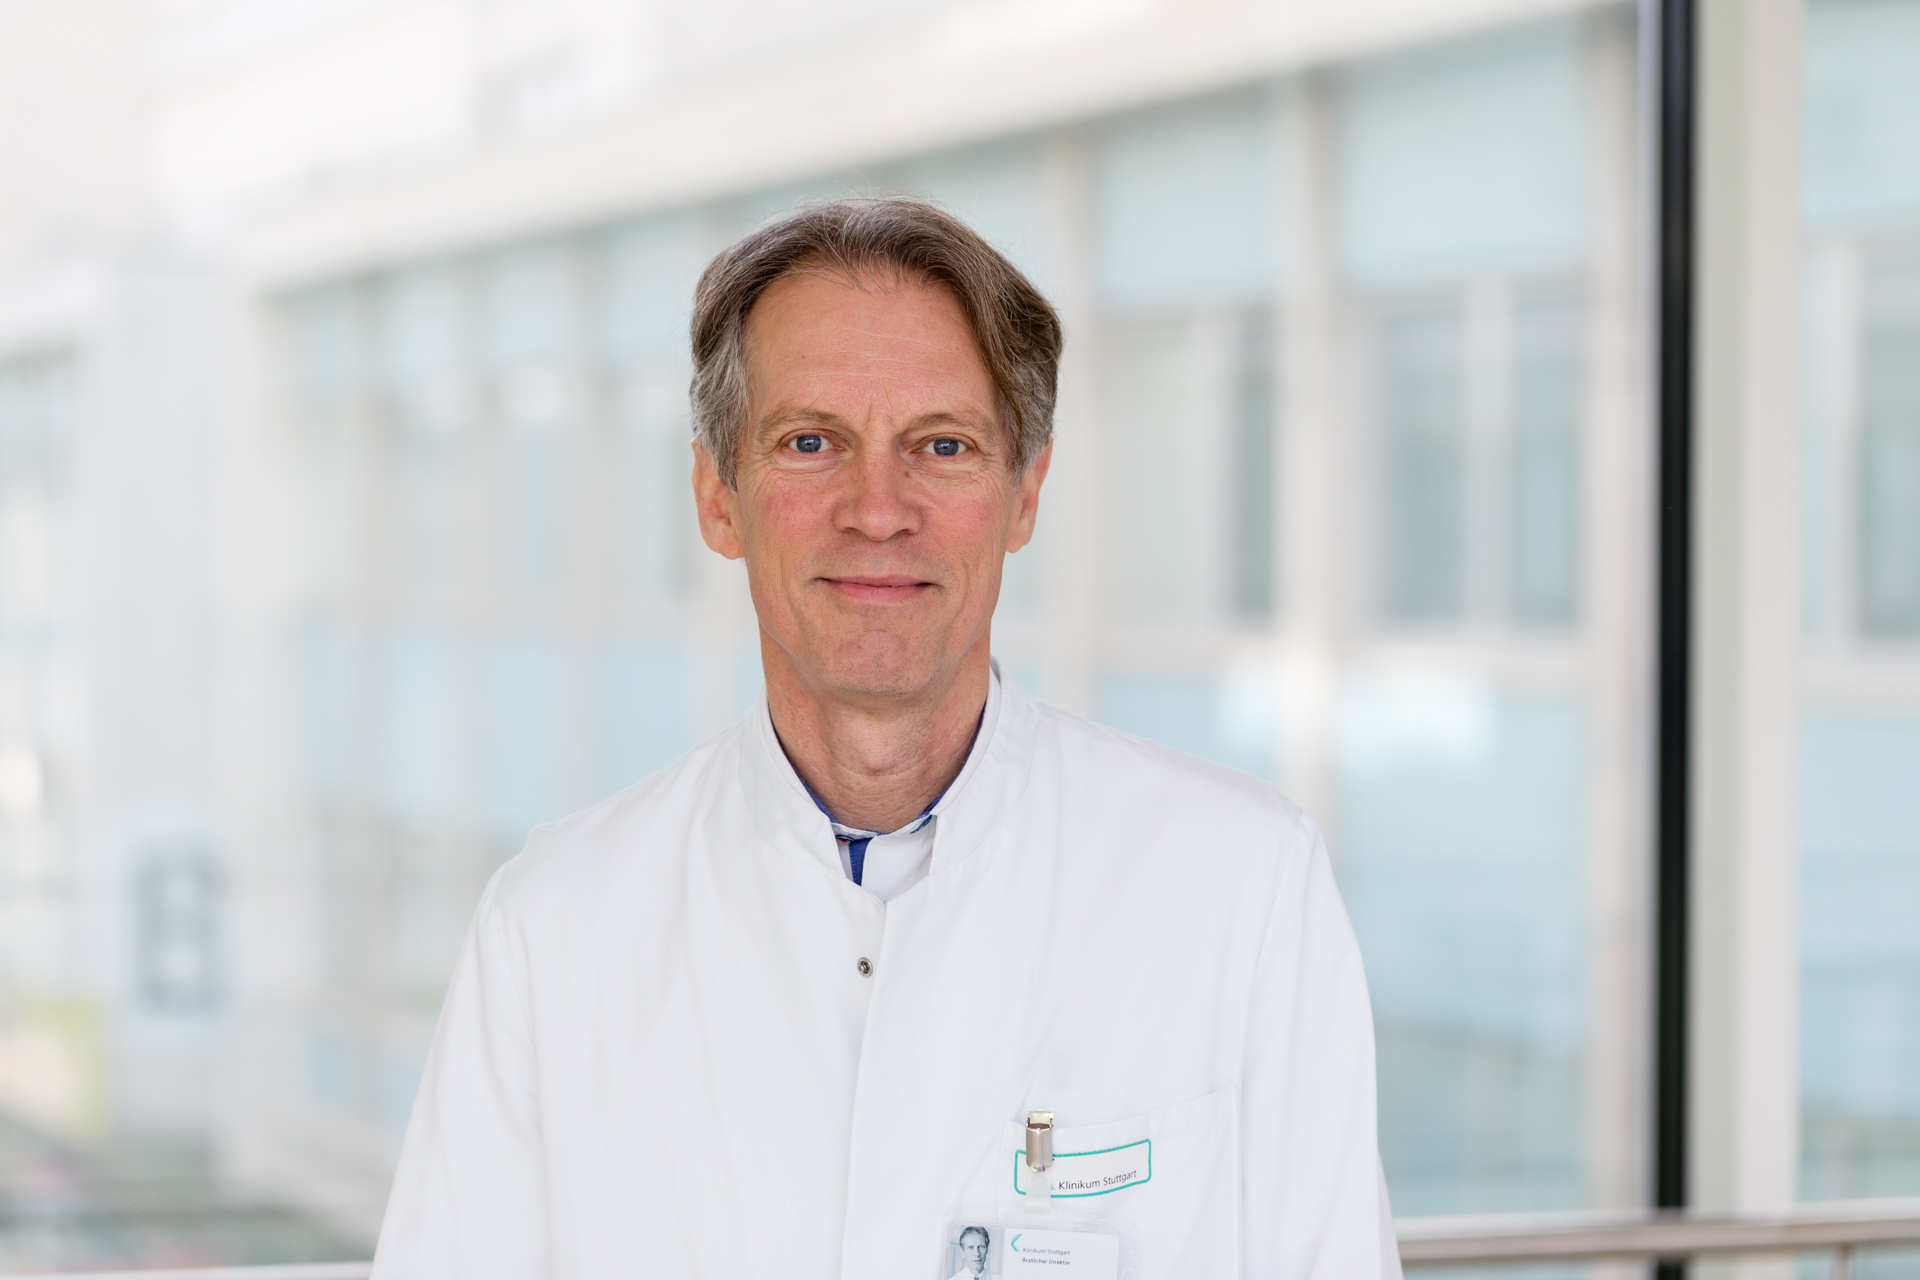 Das Bild zeigt den Arzt Prof. Dr. Ulrich Karck. Er ist mittleren Alters, hat braun-gräuliche Haare und trägt einen weißen Kittel.